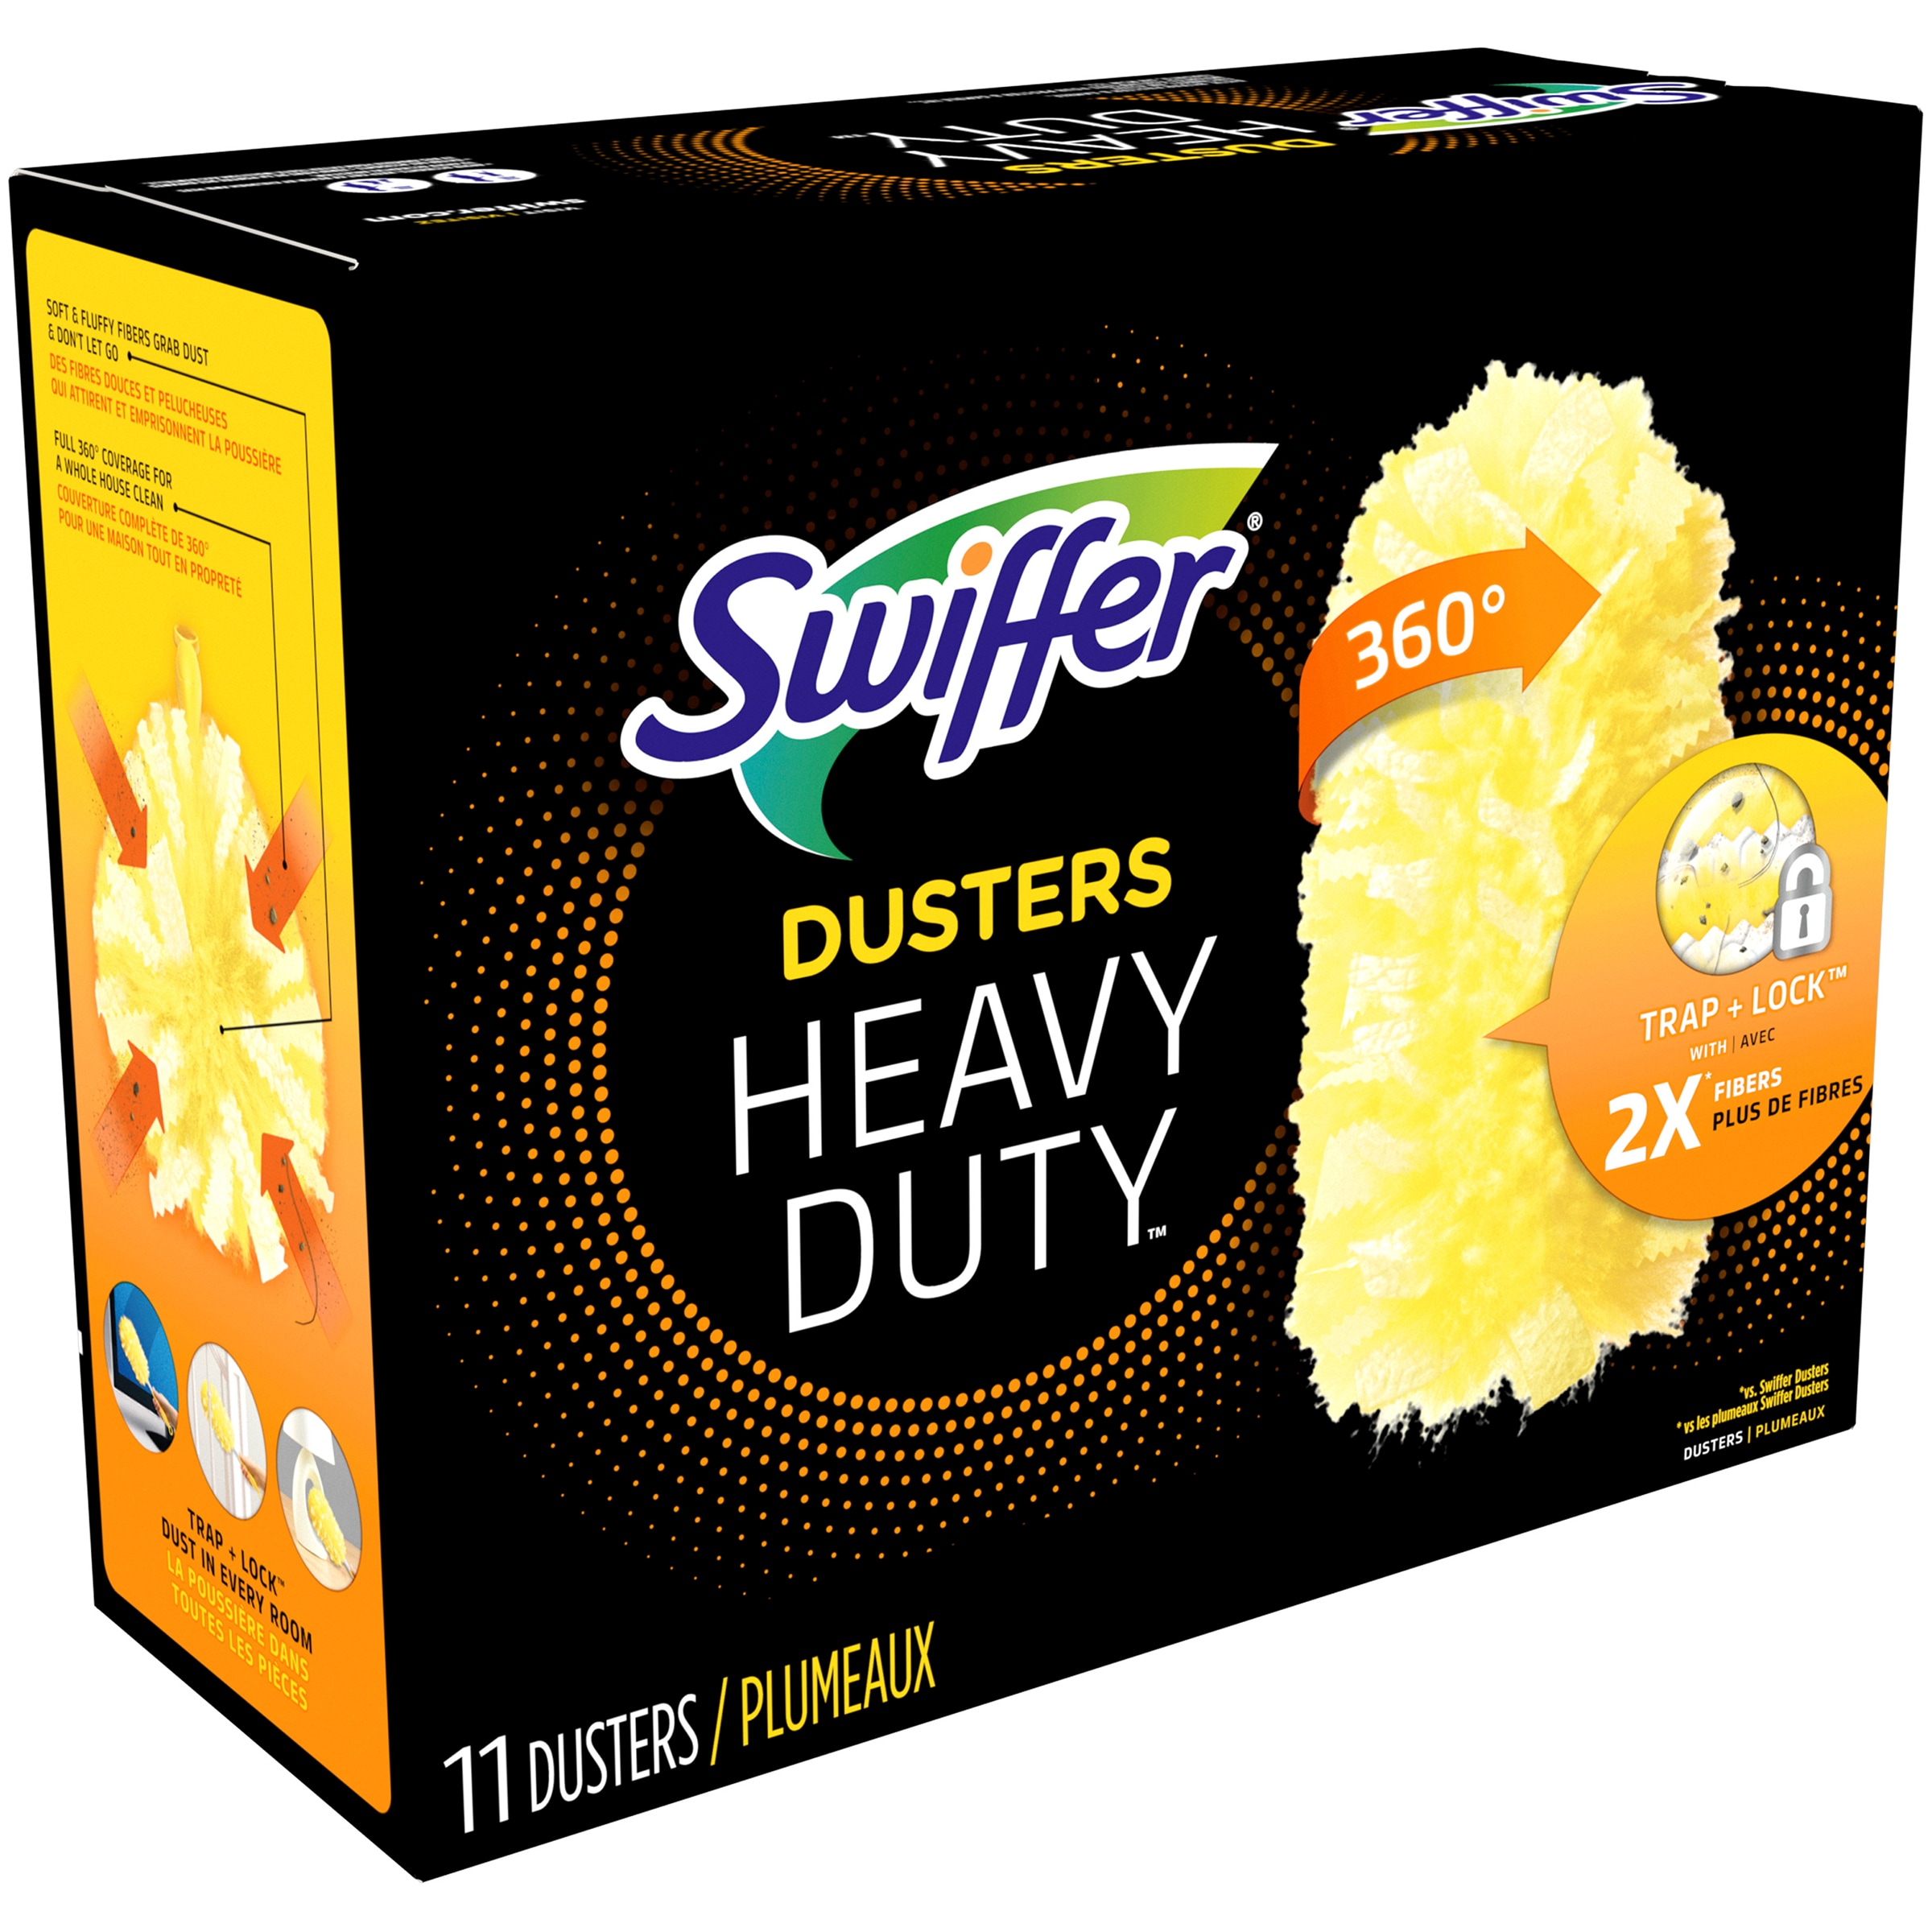 Swiffer Dusters, Heavy Duty - 11 dusters